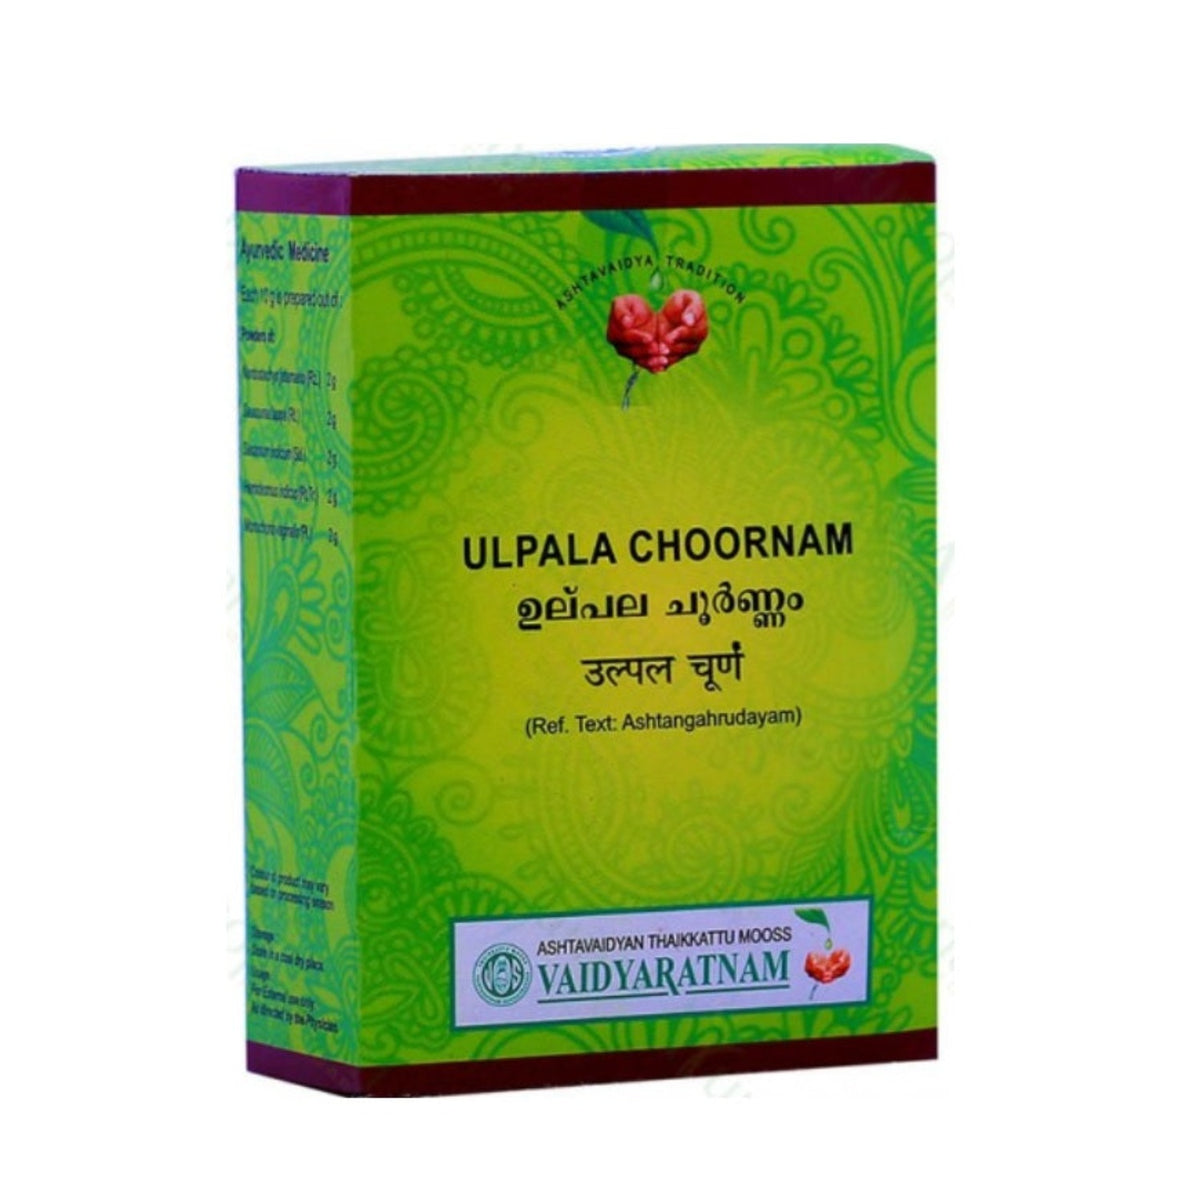 Vaidyaratnam Ayurvedic Ulpala Choornam Powder 100g